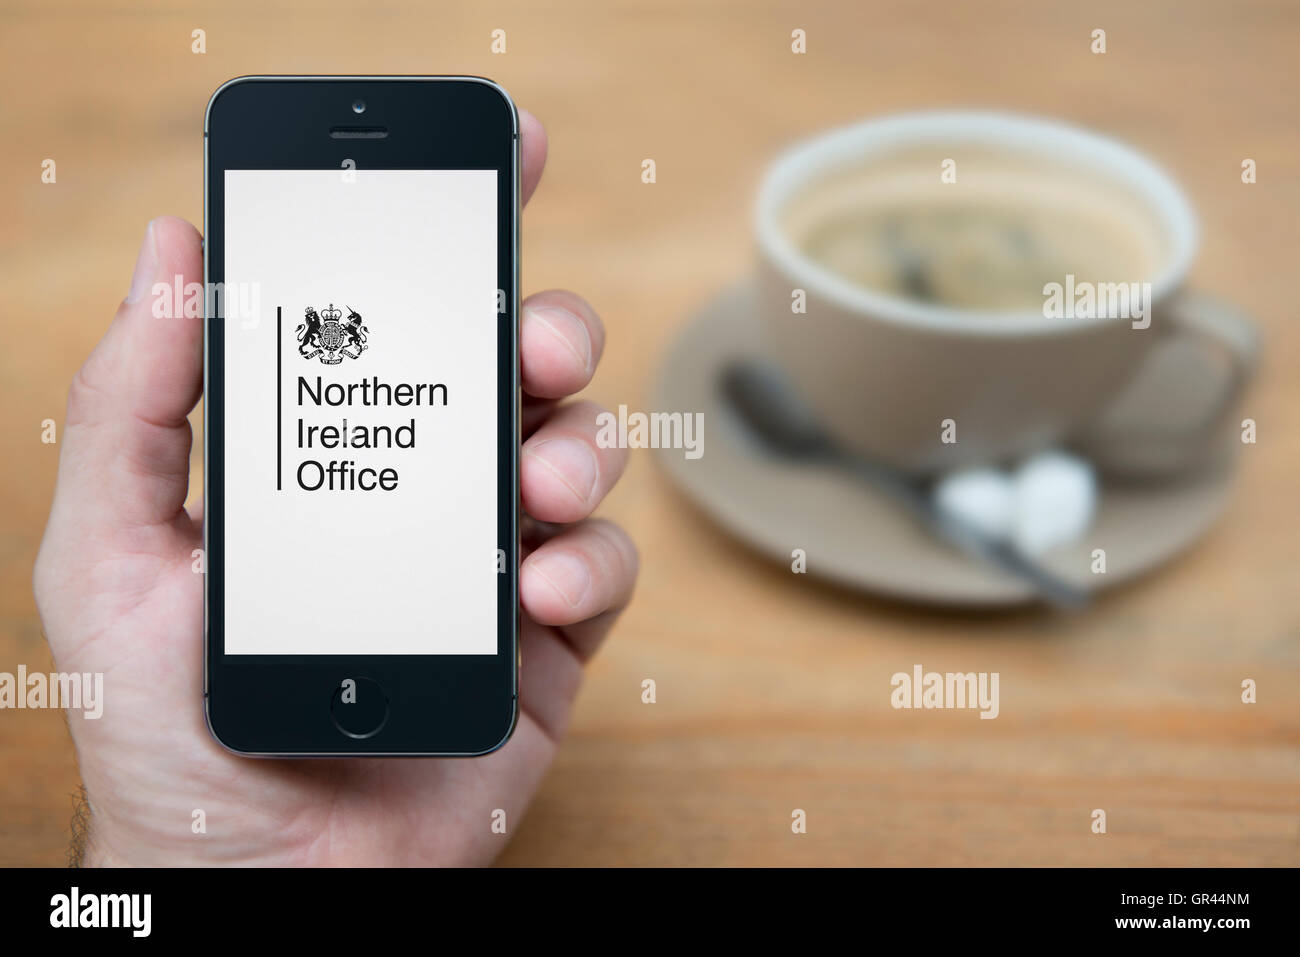 Un homme se penche sur son iPhone qui affiche le Gouvernement du Royaume-Uni Irlande du Nord crest (usage éditorial uniquement). Banque D'Images